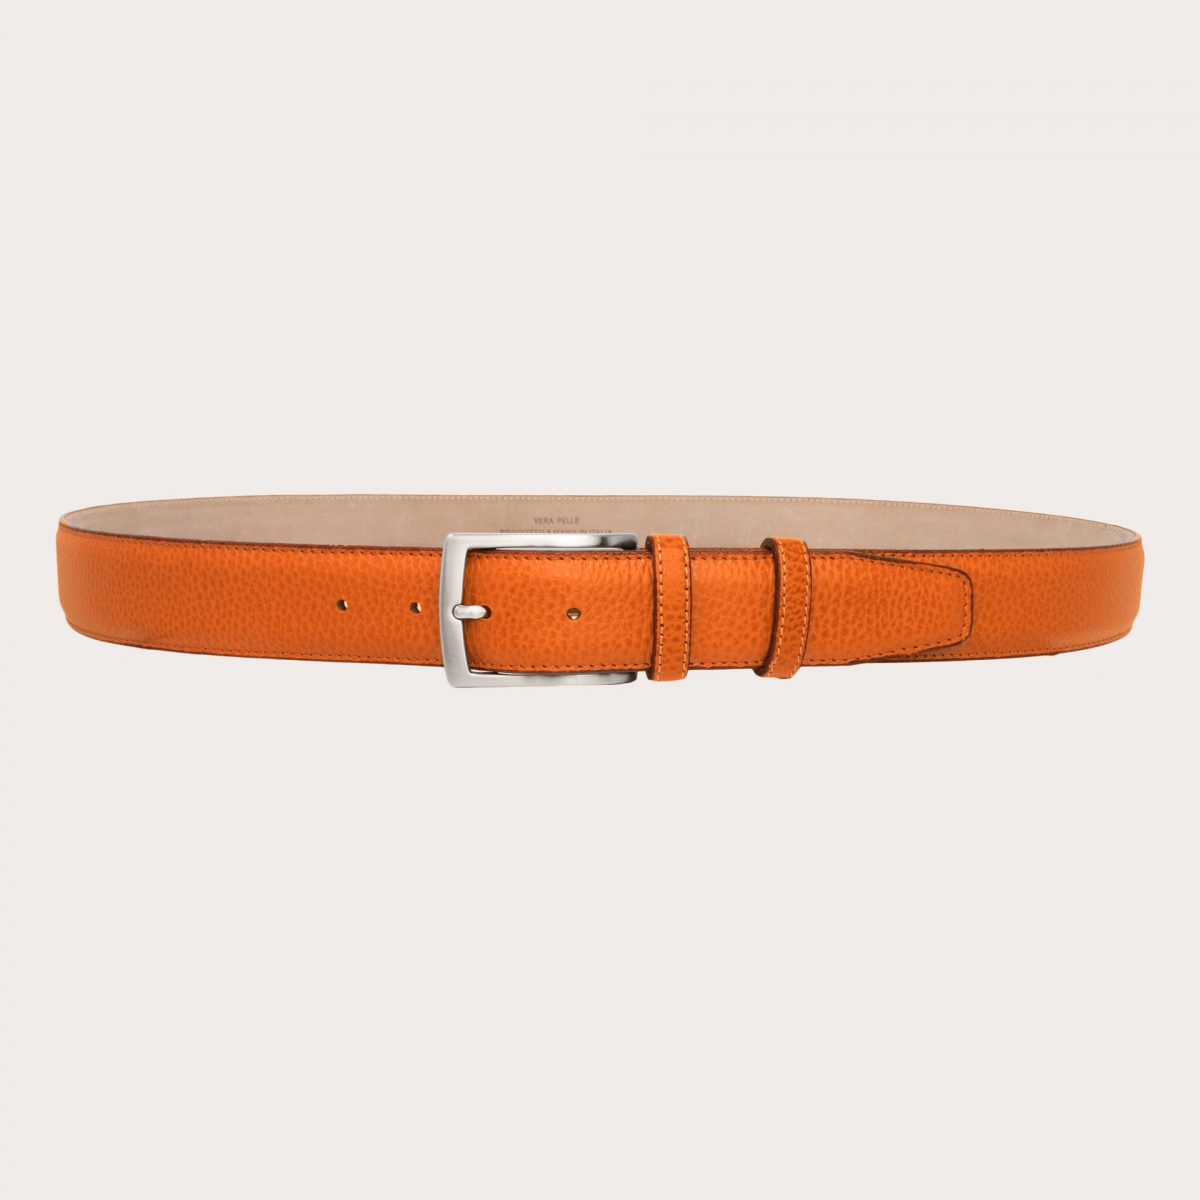 Accesorios Cinturones Cinturones de cuero Cintur\u00f3n de cuero naranja claro look casual 